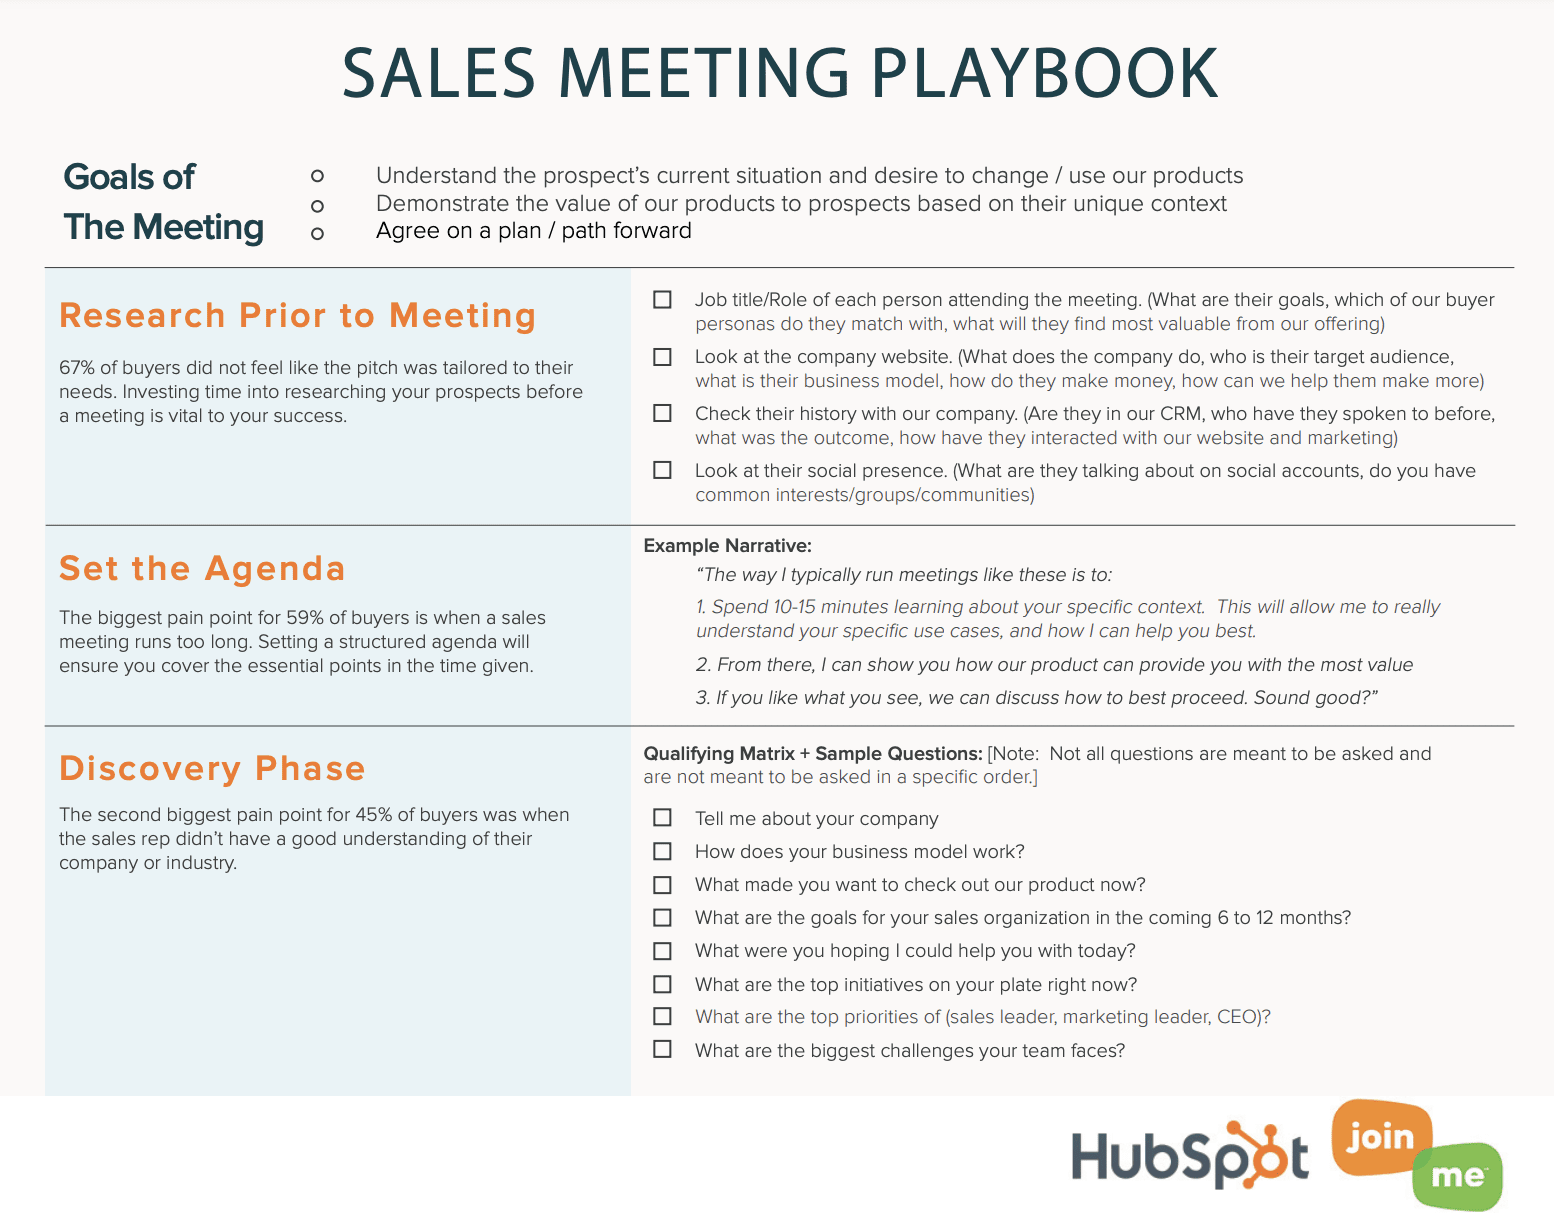 Hubspot playbook template